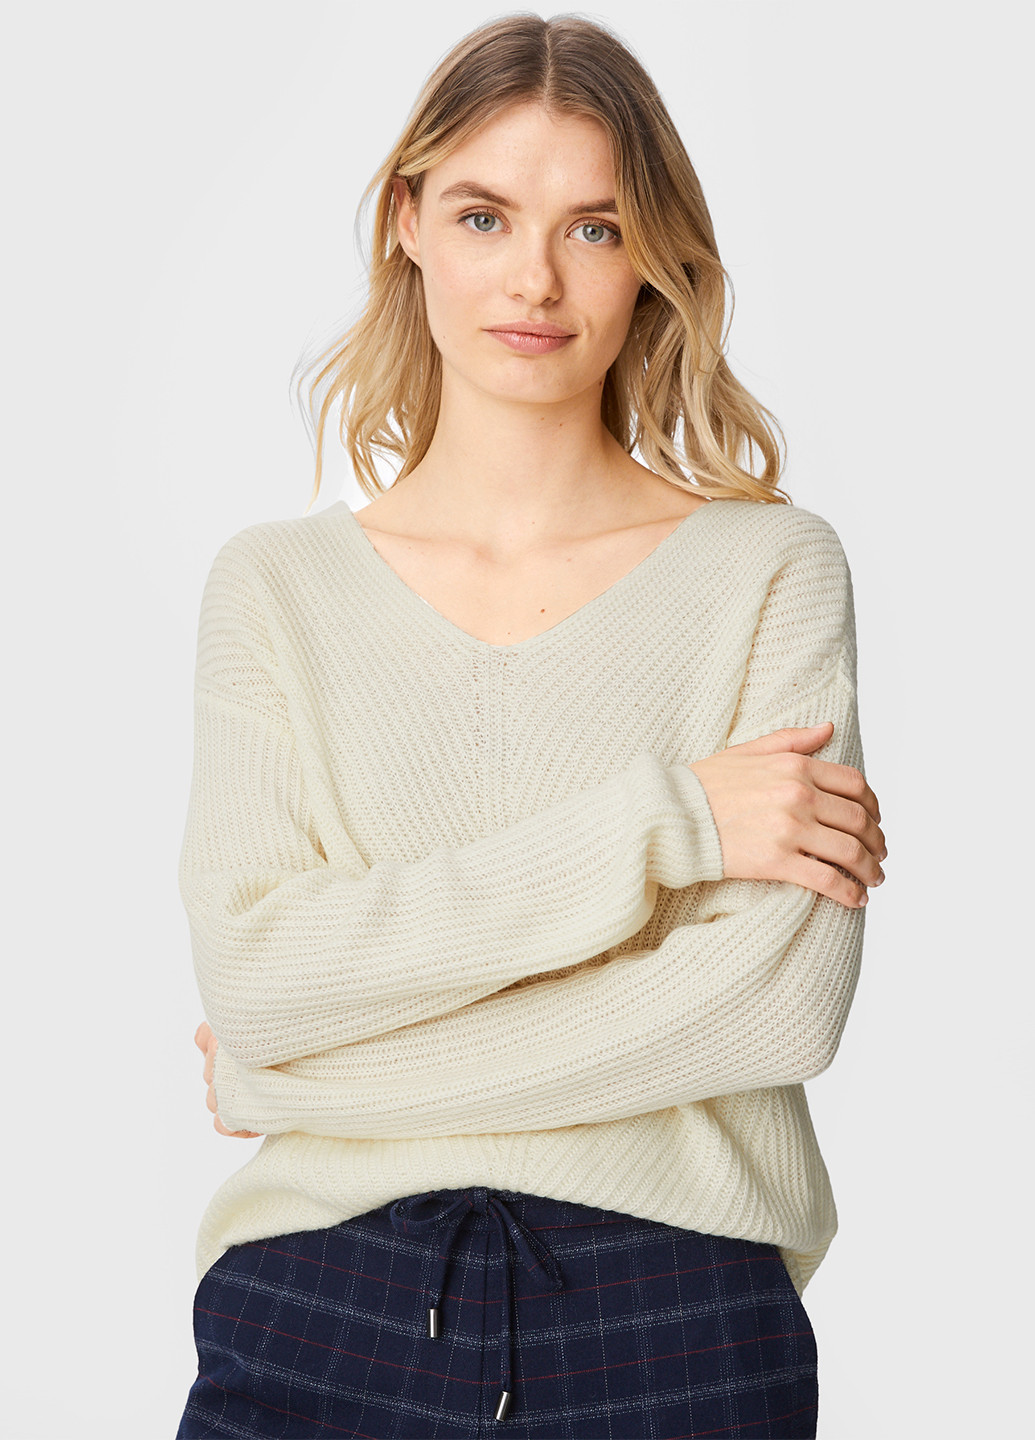 Светло-бежевый демисезонный пуловер пуловер C&A